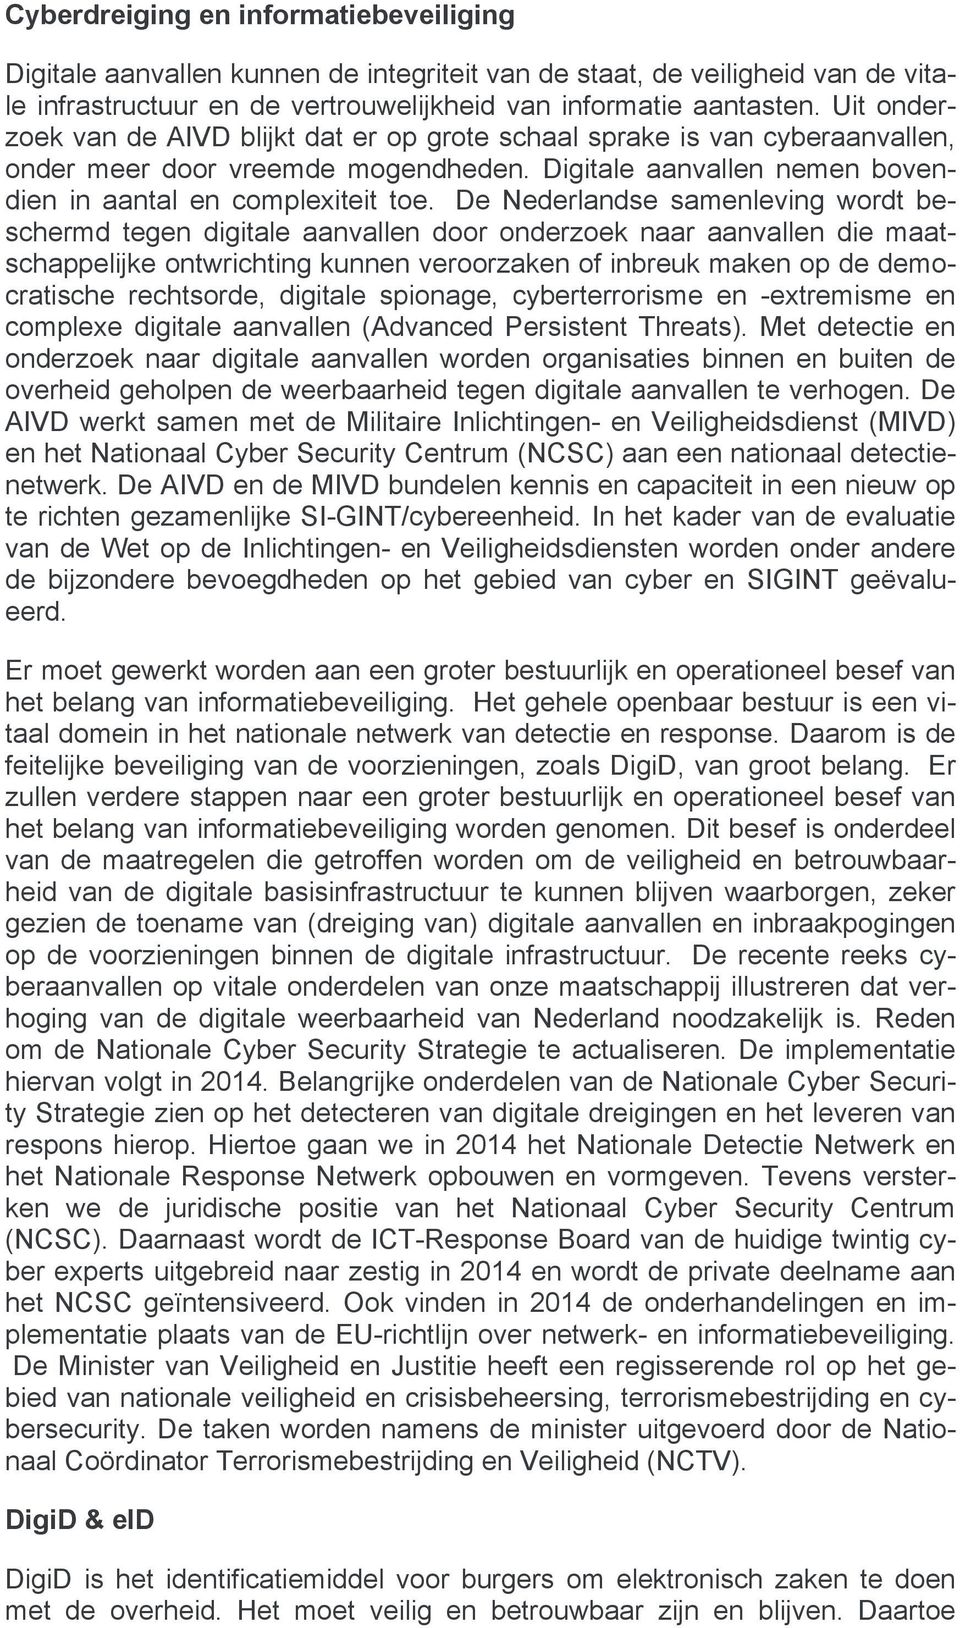 De Nederlandse samenleving wordt beschermd tegen digitale aanvallen door onderzoek naar aanvallen die maatschappelijke ontwrichting kunnen veroorzaken of inbreuk maken op de democratische rechtsorde,